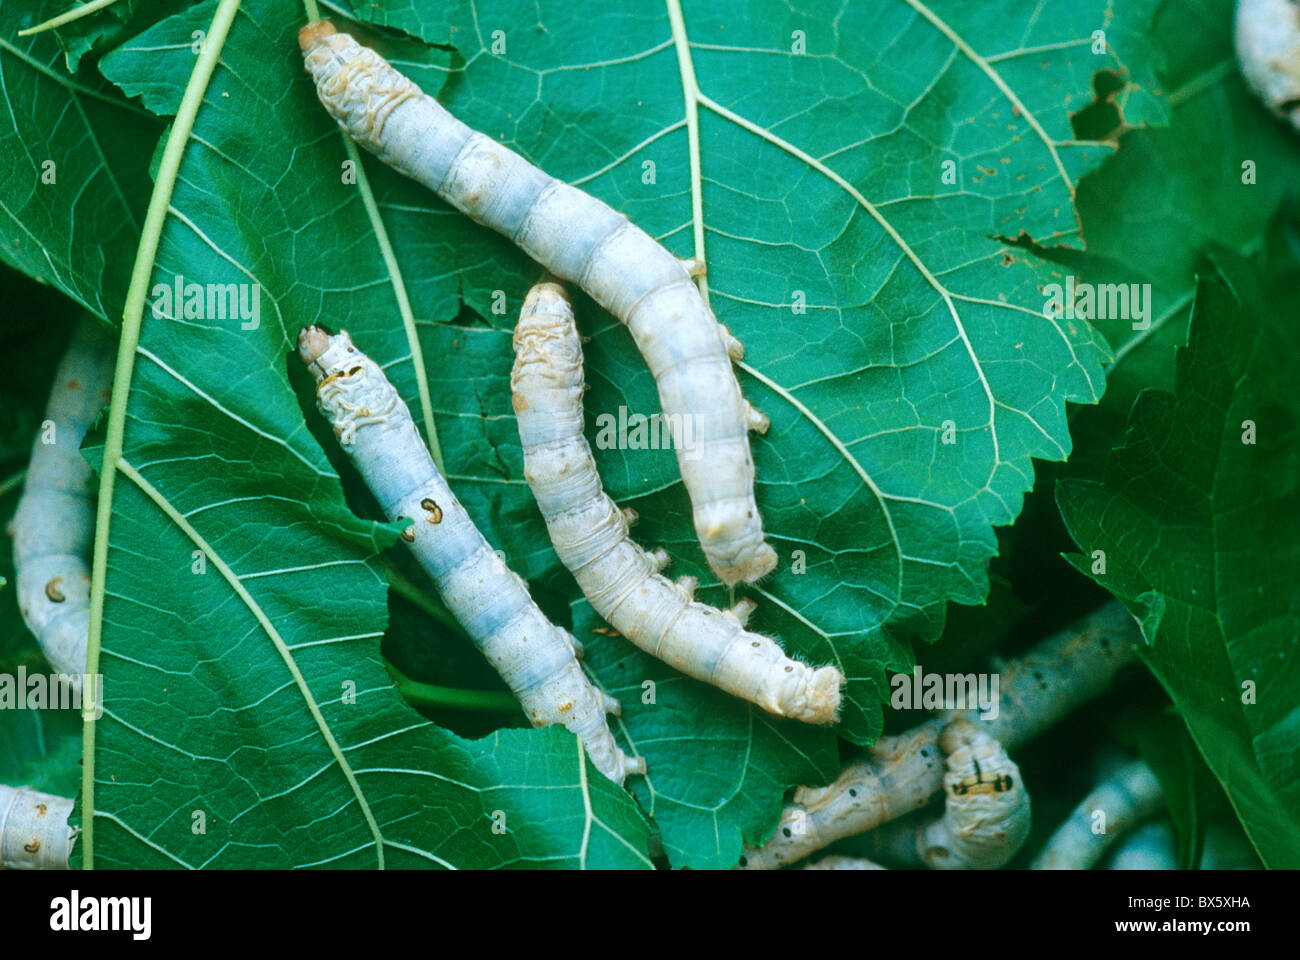 Bachi da seta, quinto instar larve di baco da seta alimentazione su foglie di gelso, Foto Stock